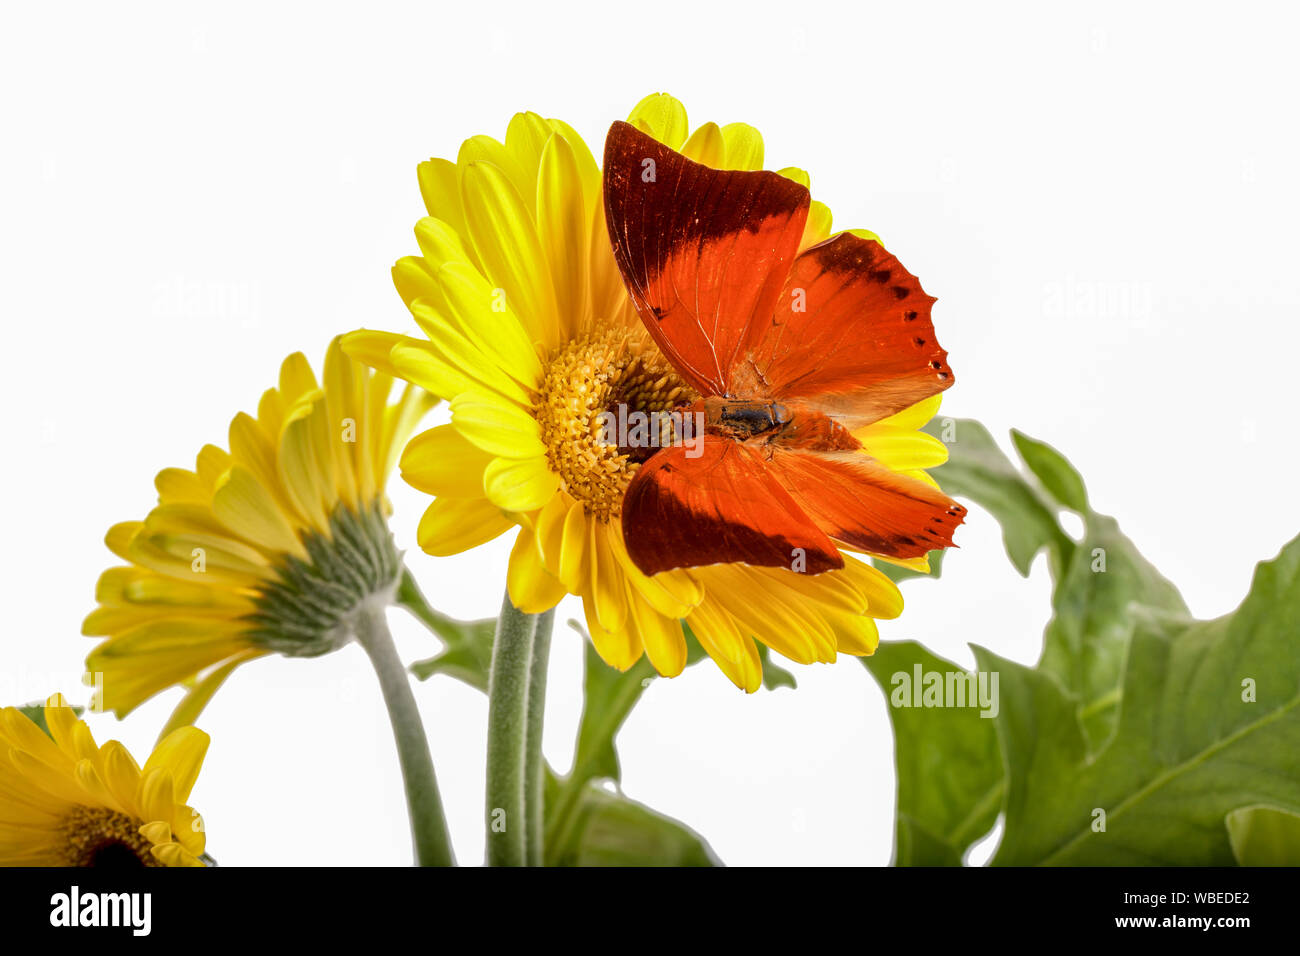 Tawny Rajah Butterfly Charaxes bernardus on a Yellow Daisy Stock Photo